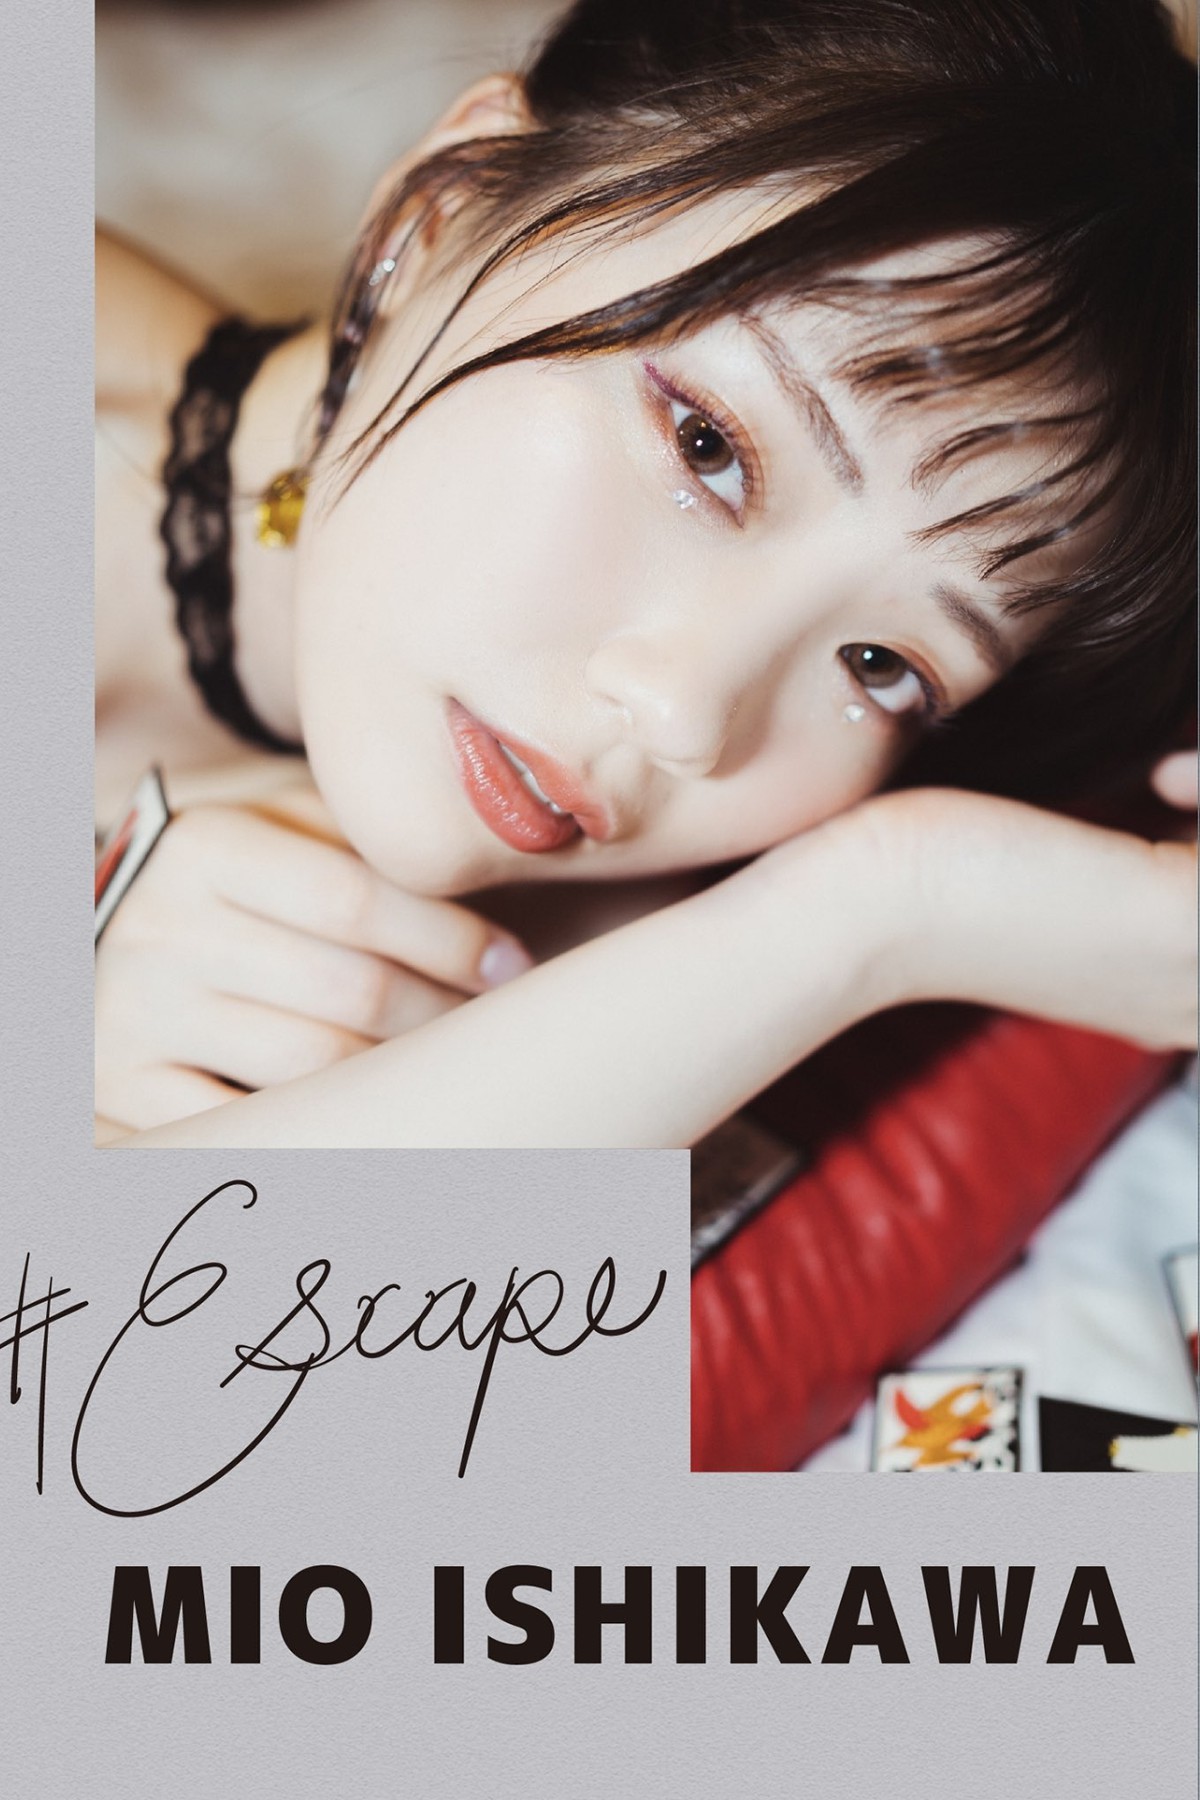 Photobook Mio Ishikawa 石川澪 – Escape No Watermark